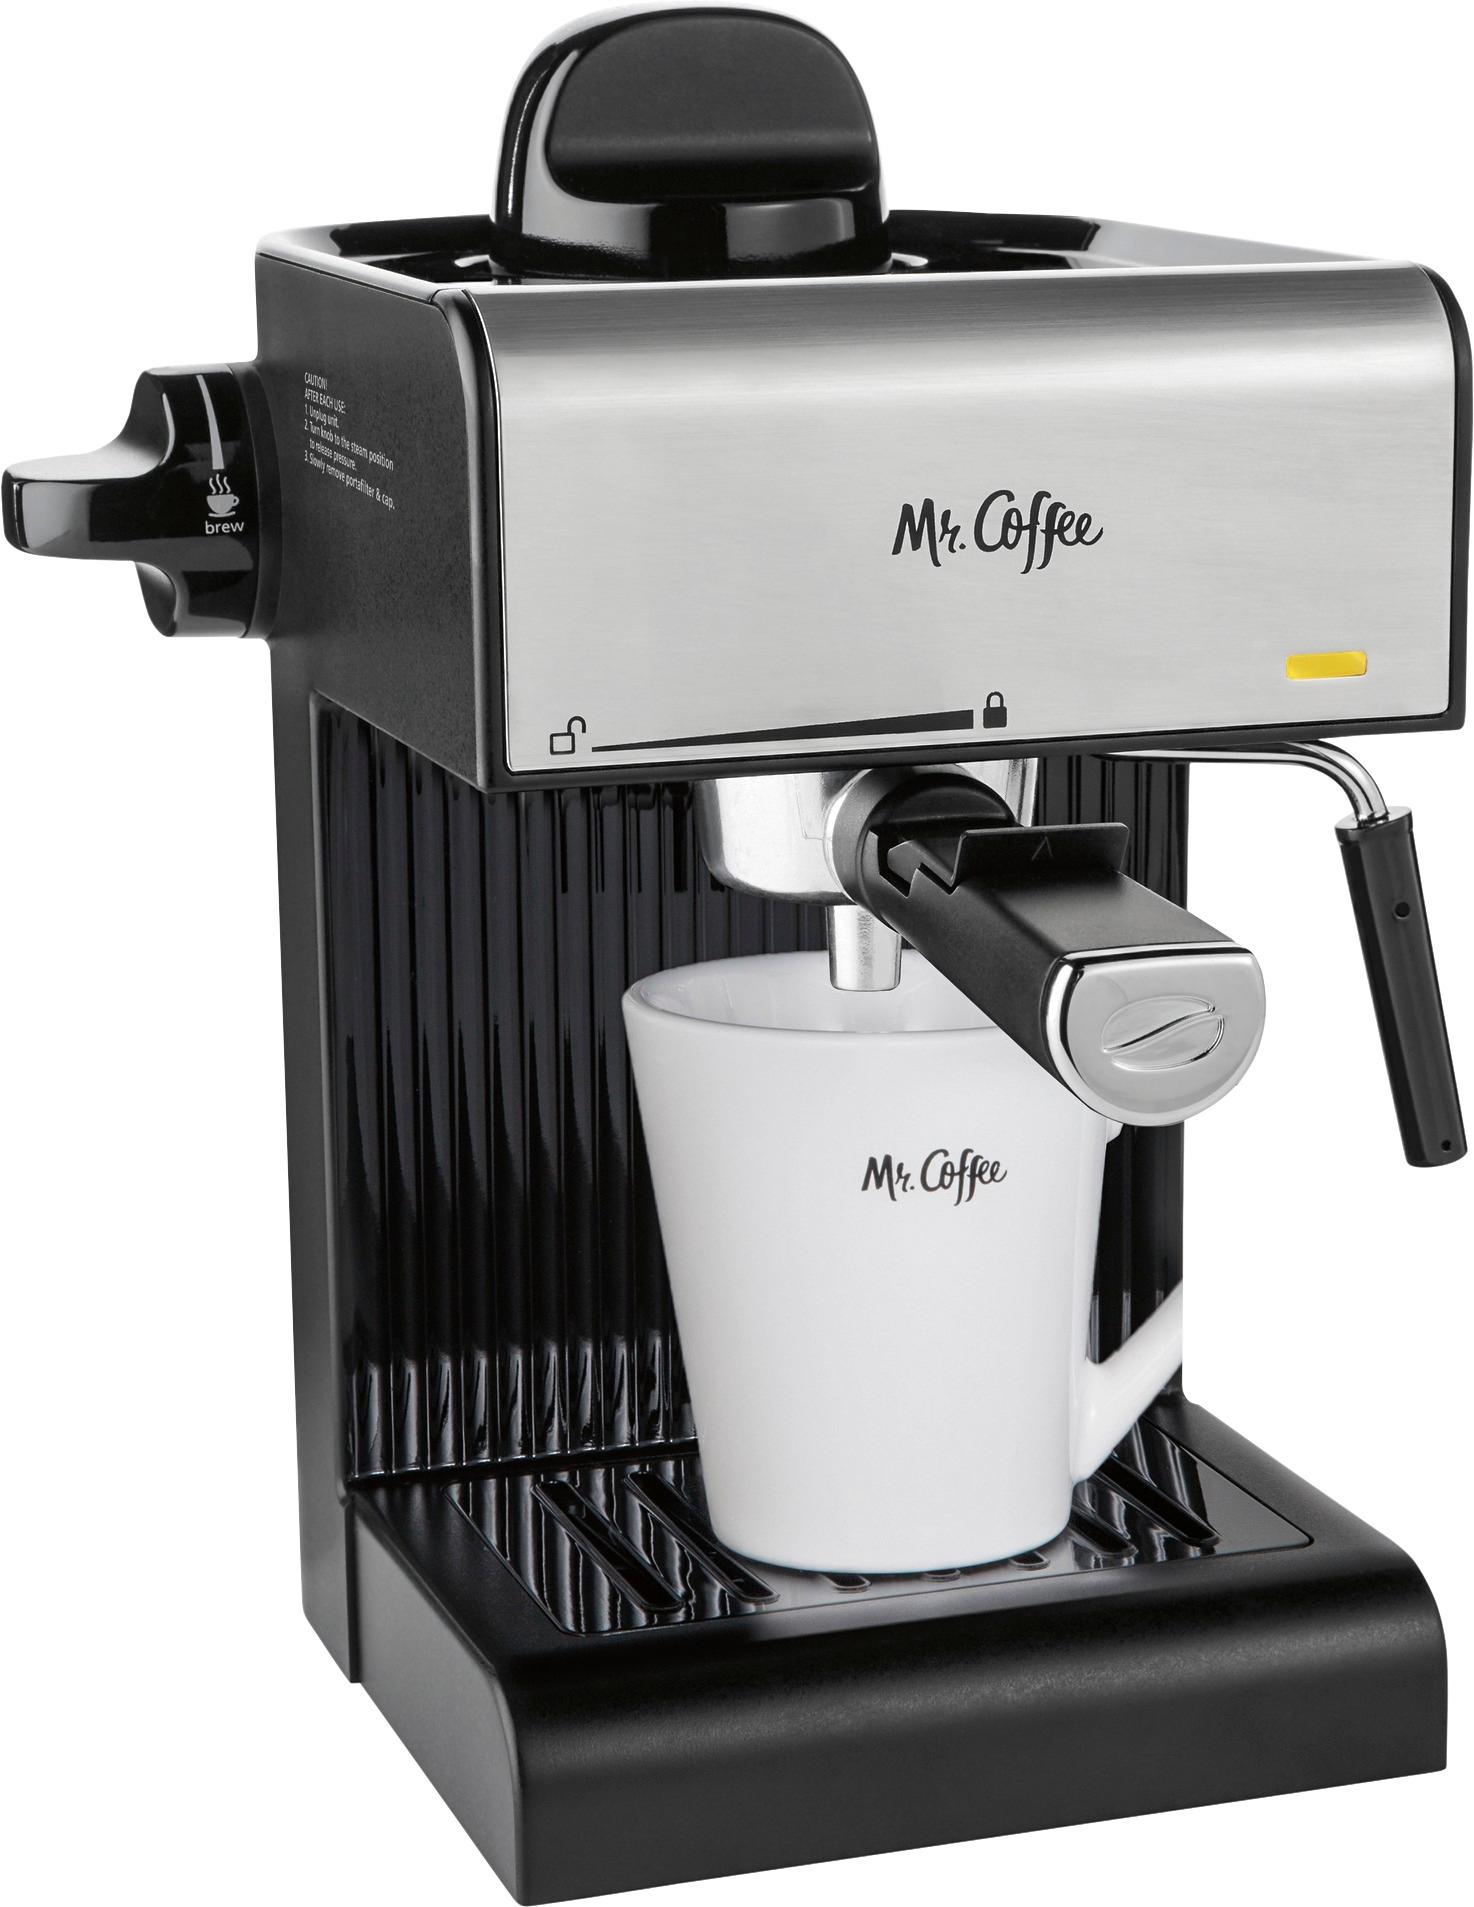 Best Buy Mr Coffee Steam Espresso Maker Coffee Maker Milk Frother Black Bvmc Ecm170,Fried Dumplings Drawing